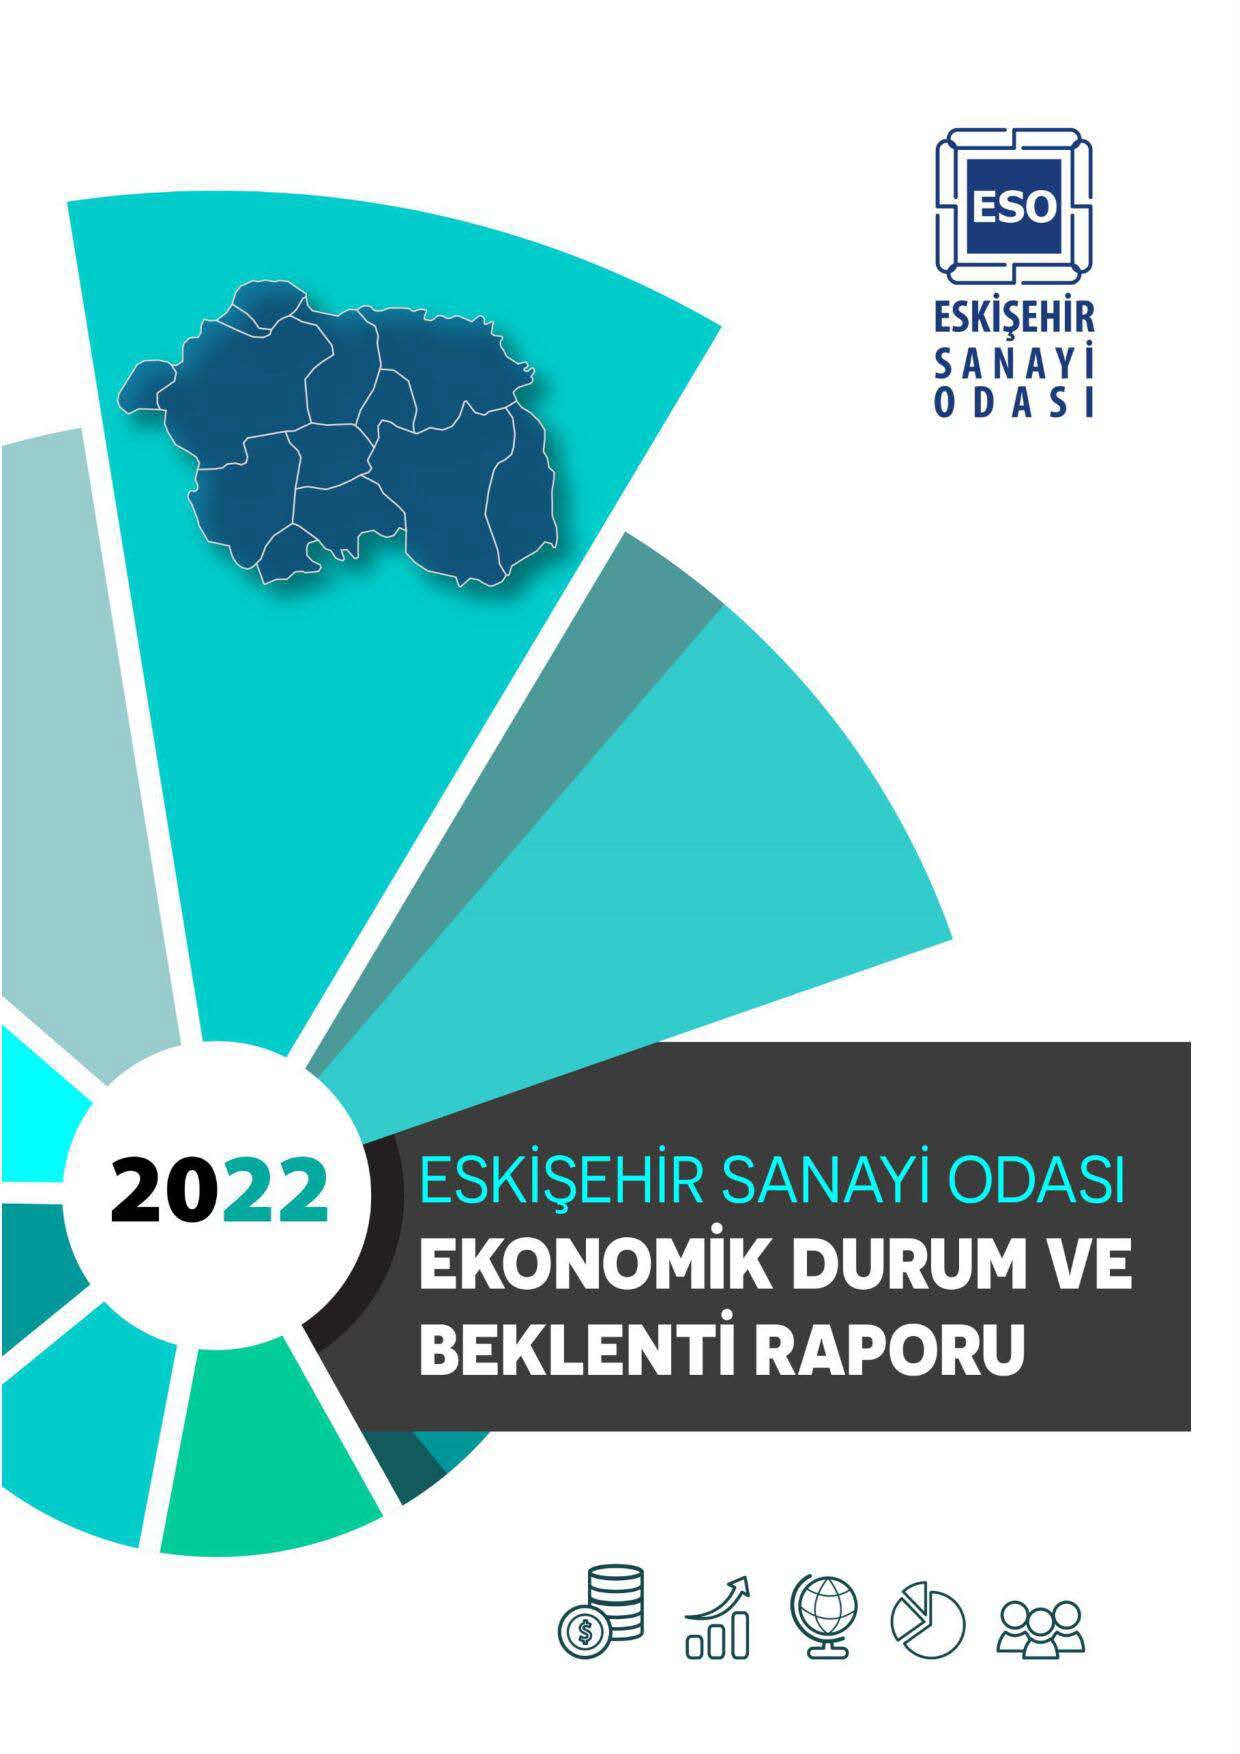 ESKİŞEHİR SANAYİ ODASI - Ekonomik Durum ve Beklenti Raporu/2022